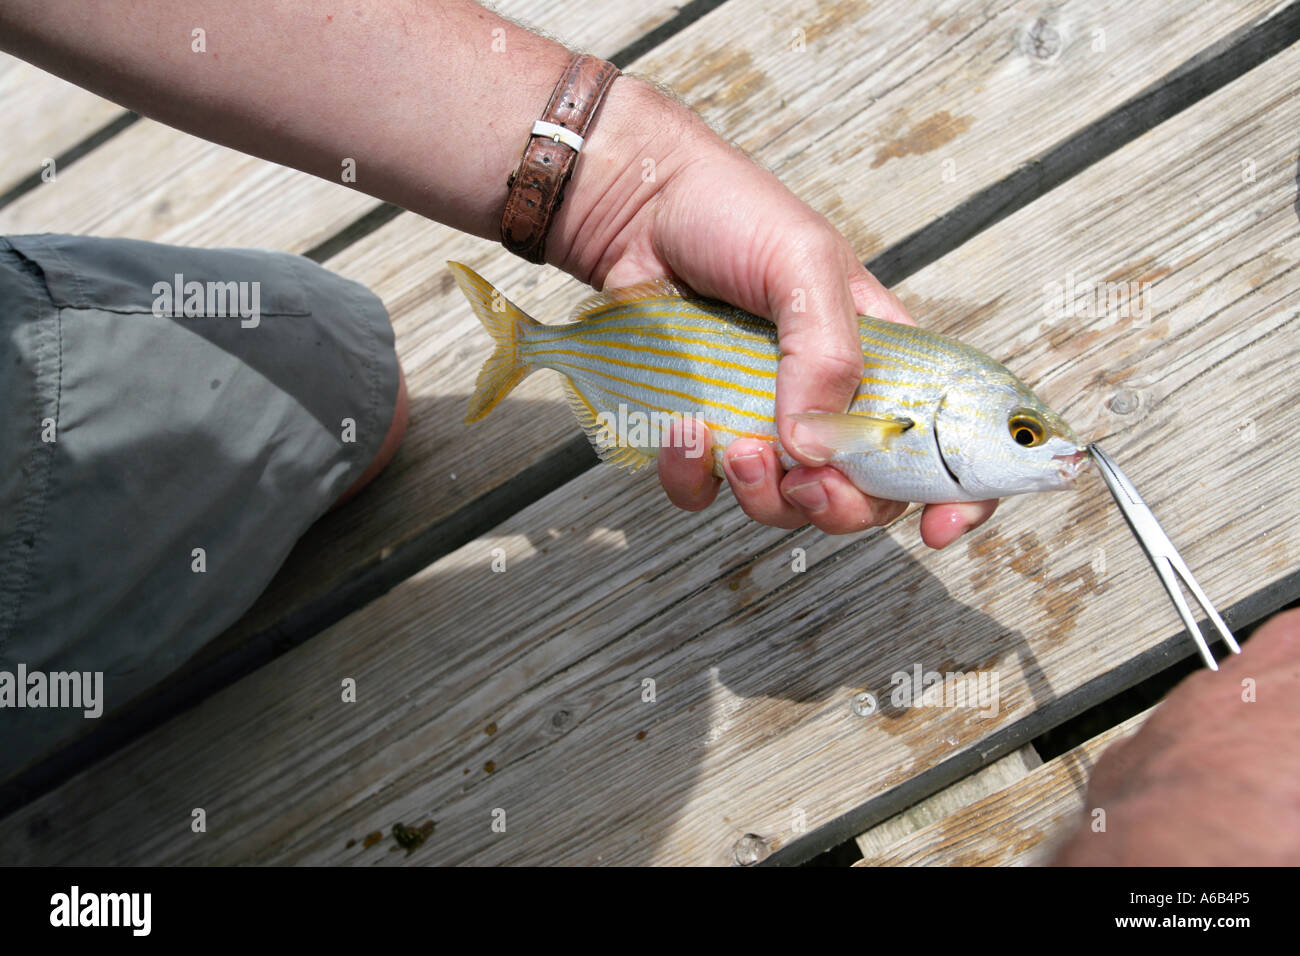 Man catching small fish Stock Photo - Alamy